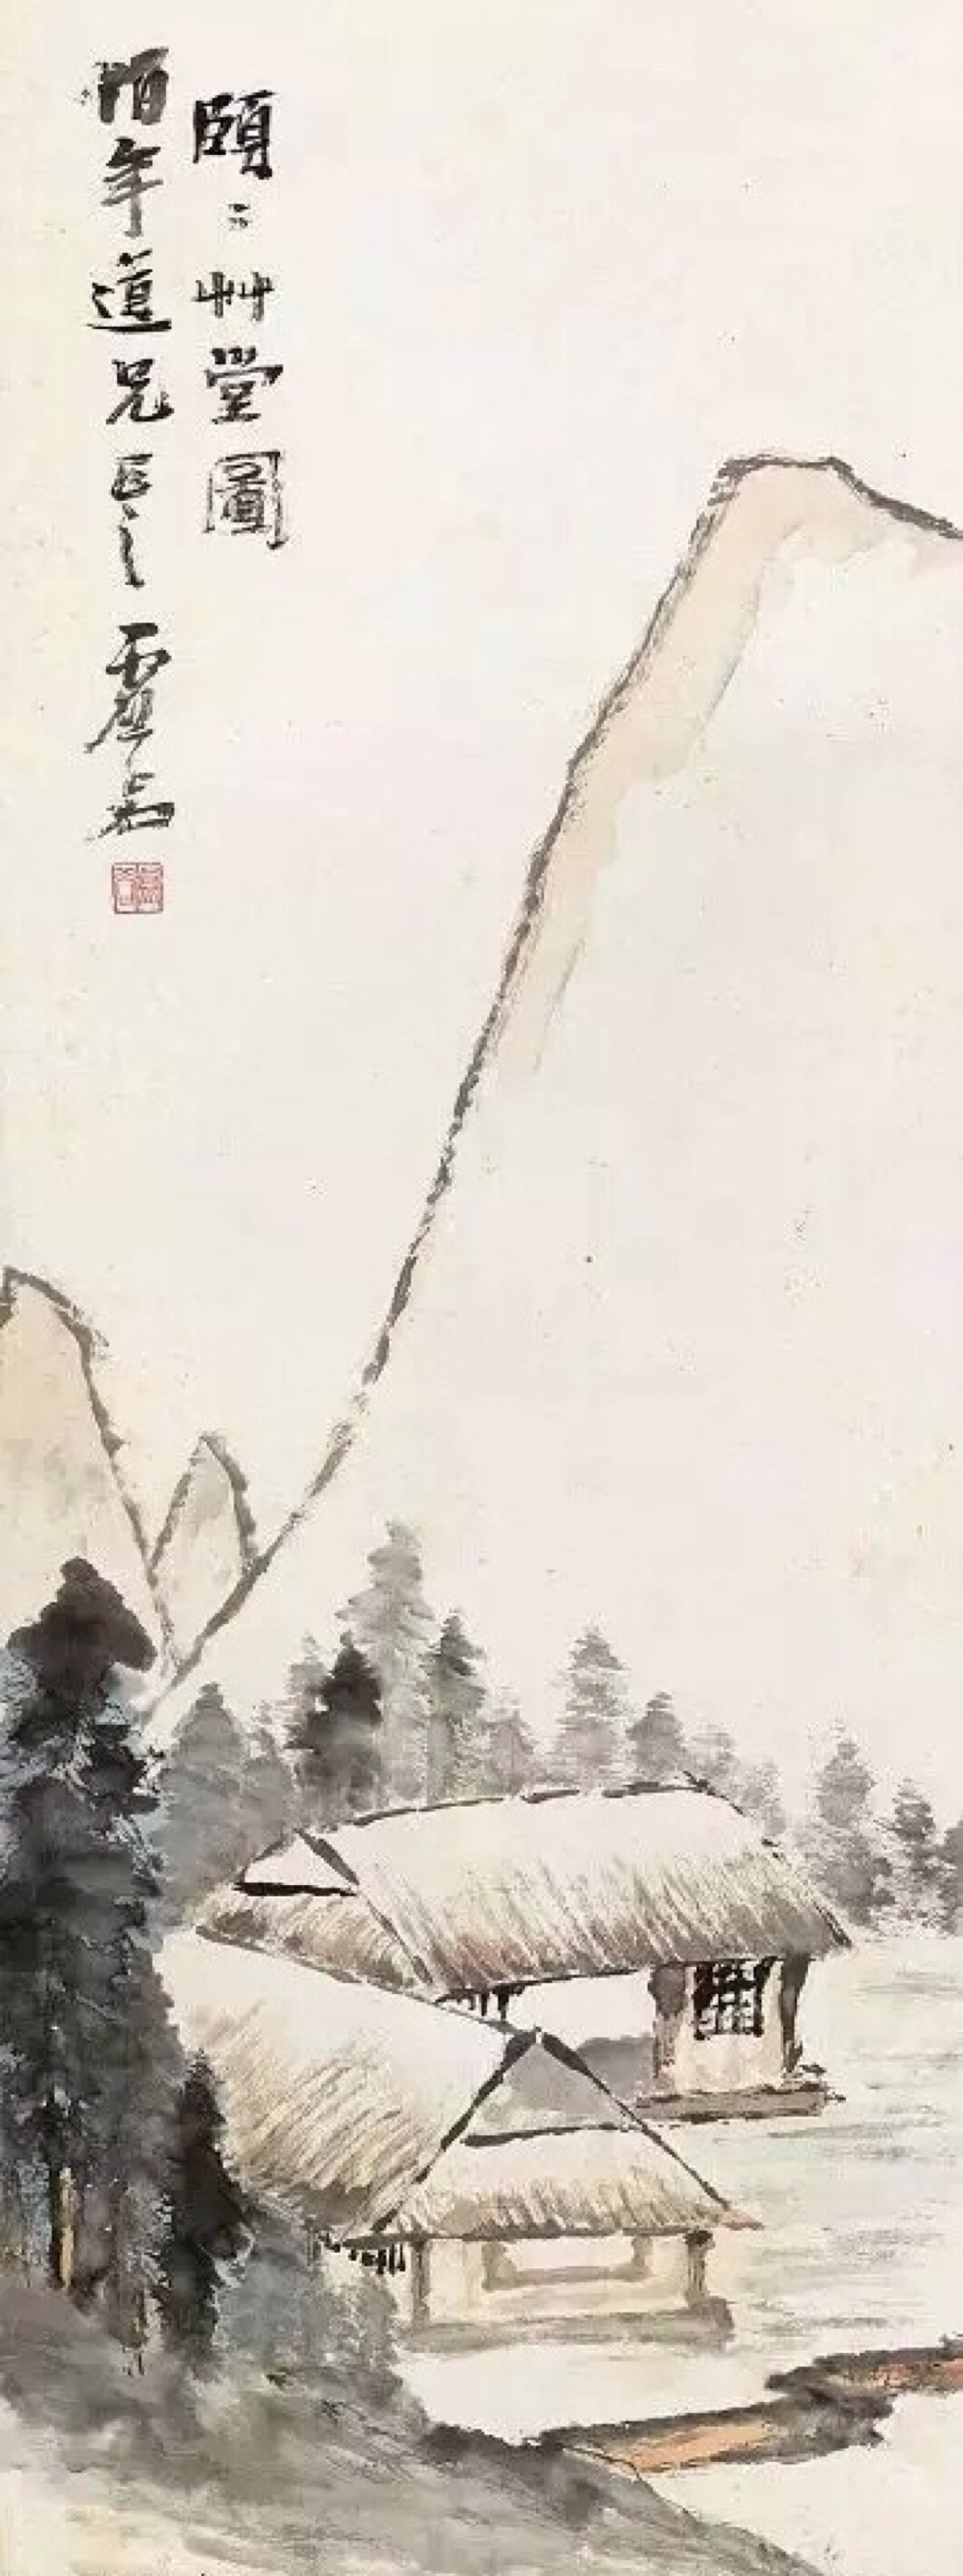 虚谷(1823-1896),安徽新安(今歙县)人.清代画家.僧人.